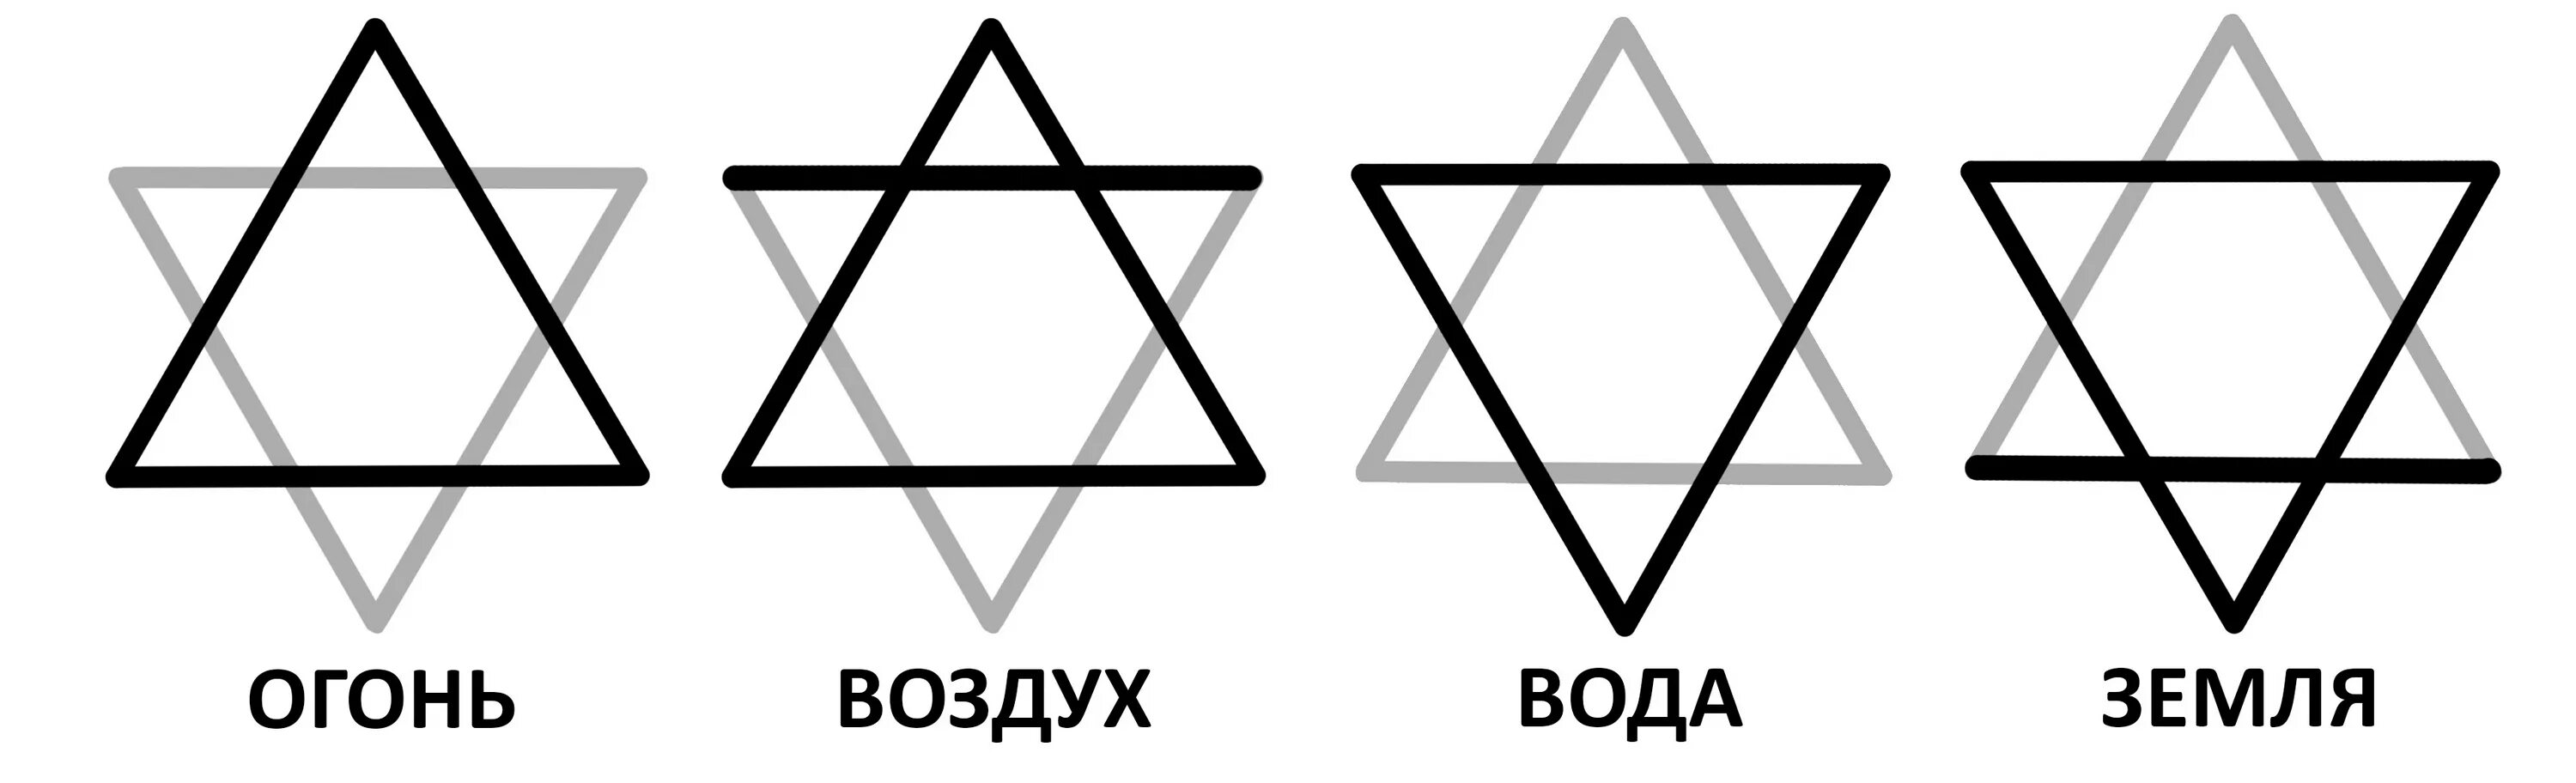 Защитная гексаграмма звезда Соломона. Звезда Давида и символы стихий. Магия гексаграмма звезда Соломона. Символы стихий в магии треугольники.